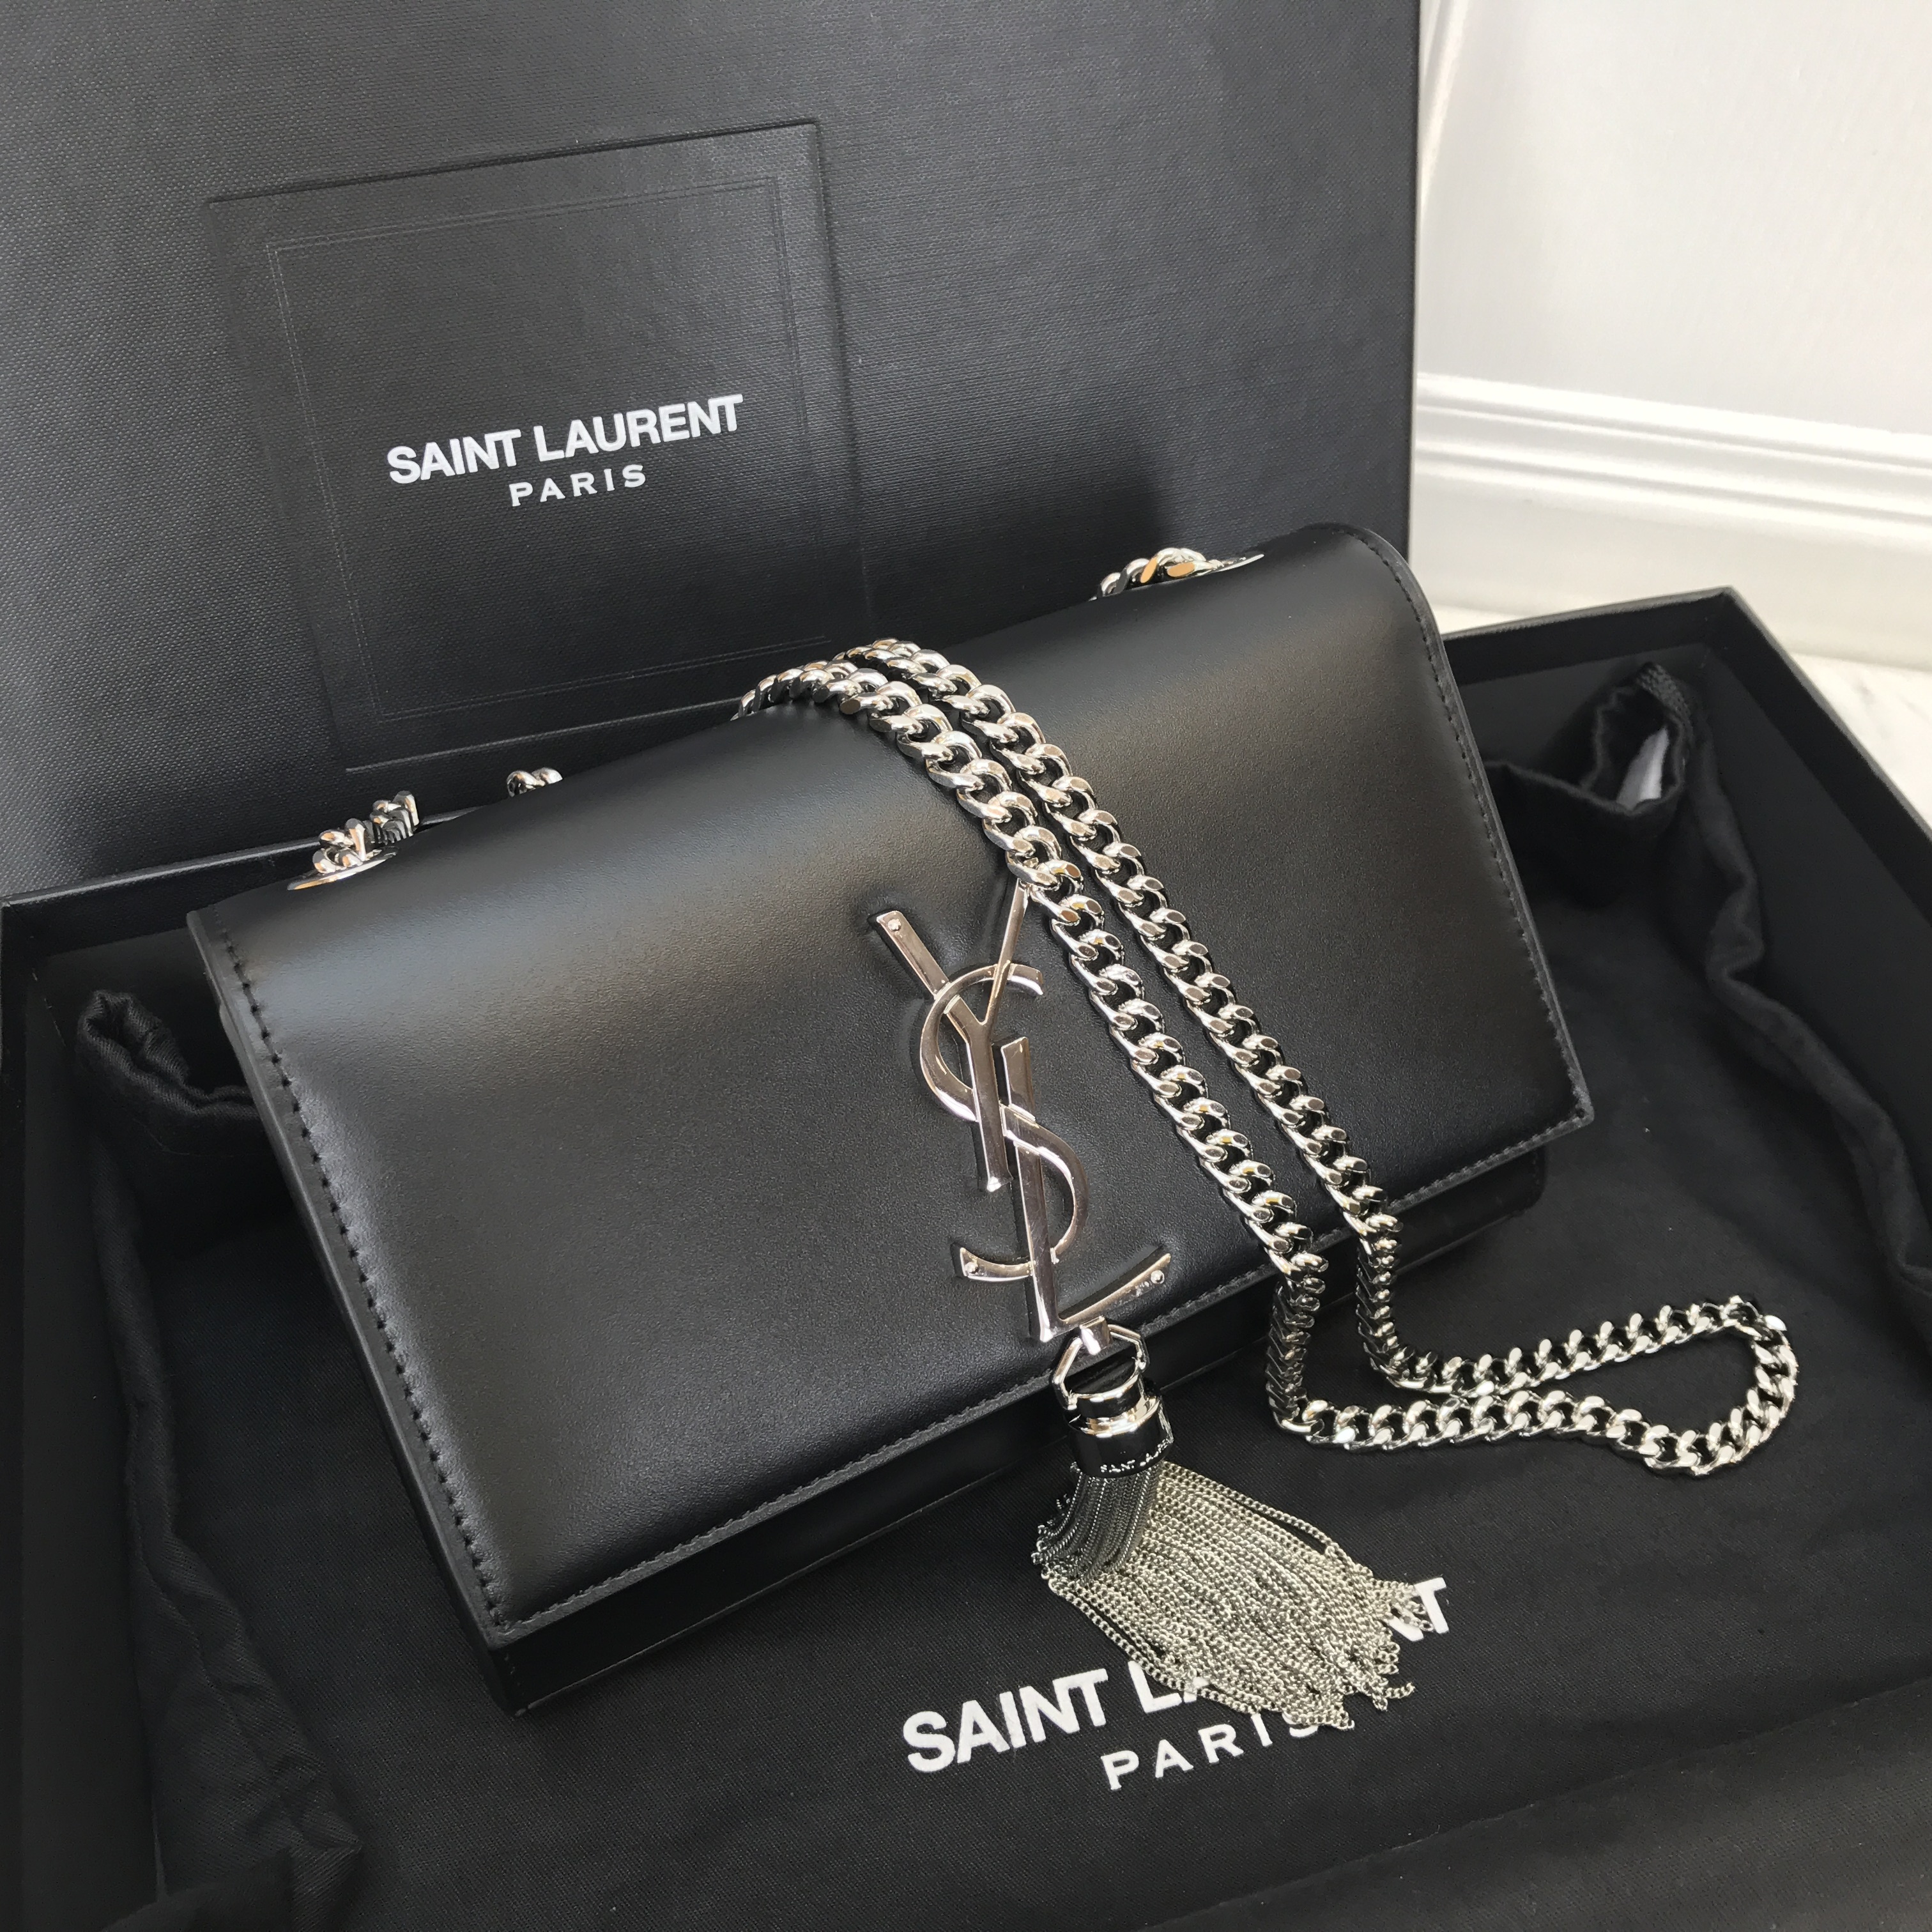 SYL Kate Small Bag Y Yves Saint Laurent St Laurent Bags Ysl Shop Sale Handbags Outlet Online 1540202490250 0 